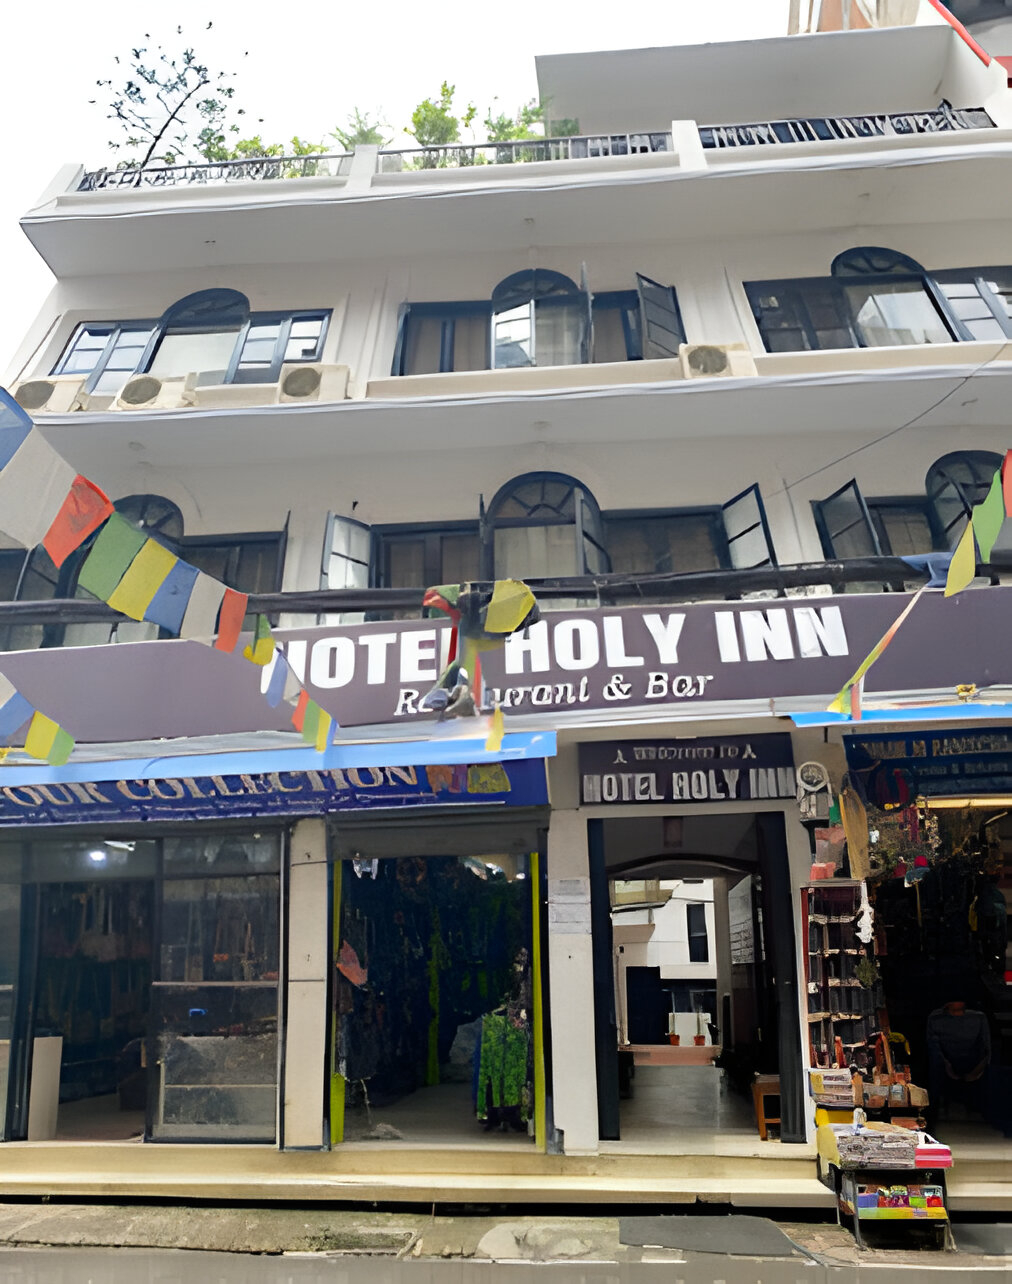 बर्दियाका युवालाई प्रेरणादायी : दुर्गम जिल्लाका एक व्यक्तिले काठमाडौंमा स्थापना गरे सफल होटल